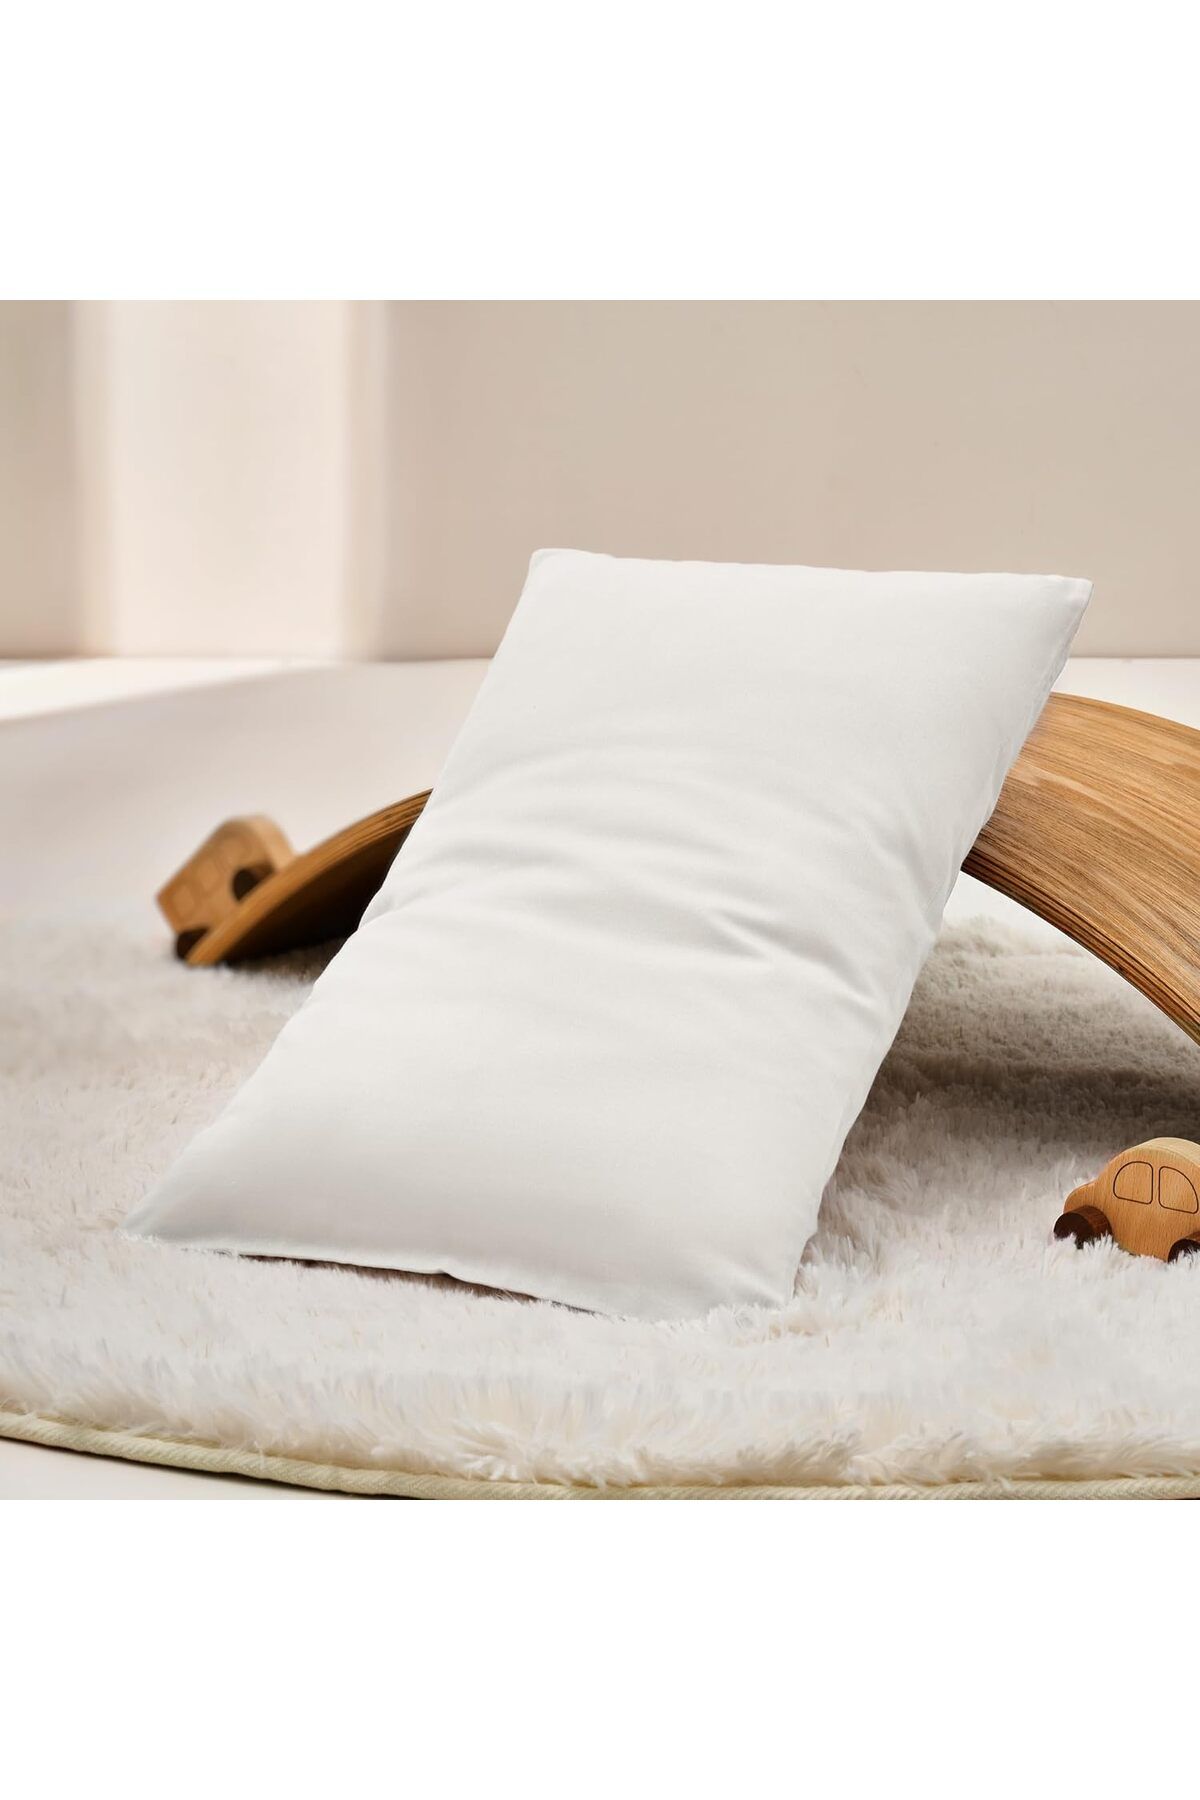 İzgi Concept Premium Pamuklu Bebek Yastığı 1-4 Yaş Saf Silikon Dolgulu 35x45 255gr - Premium Quality Baby Pillow